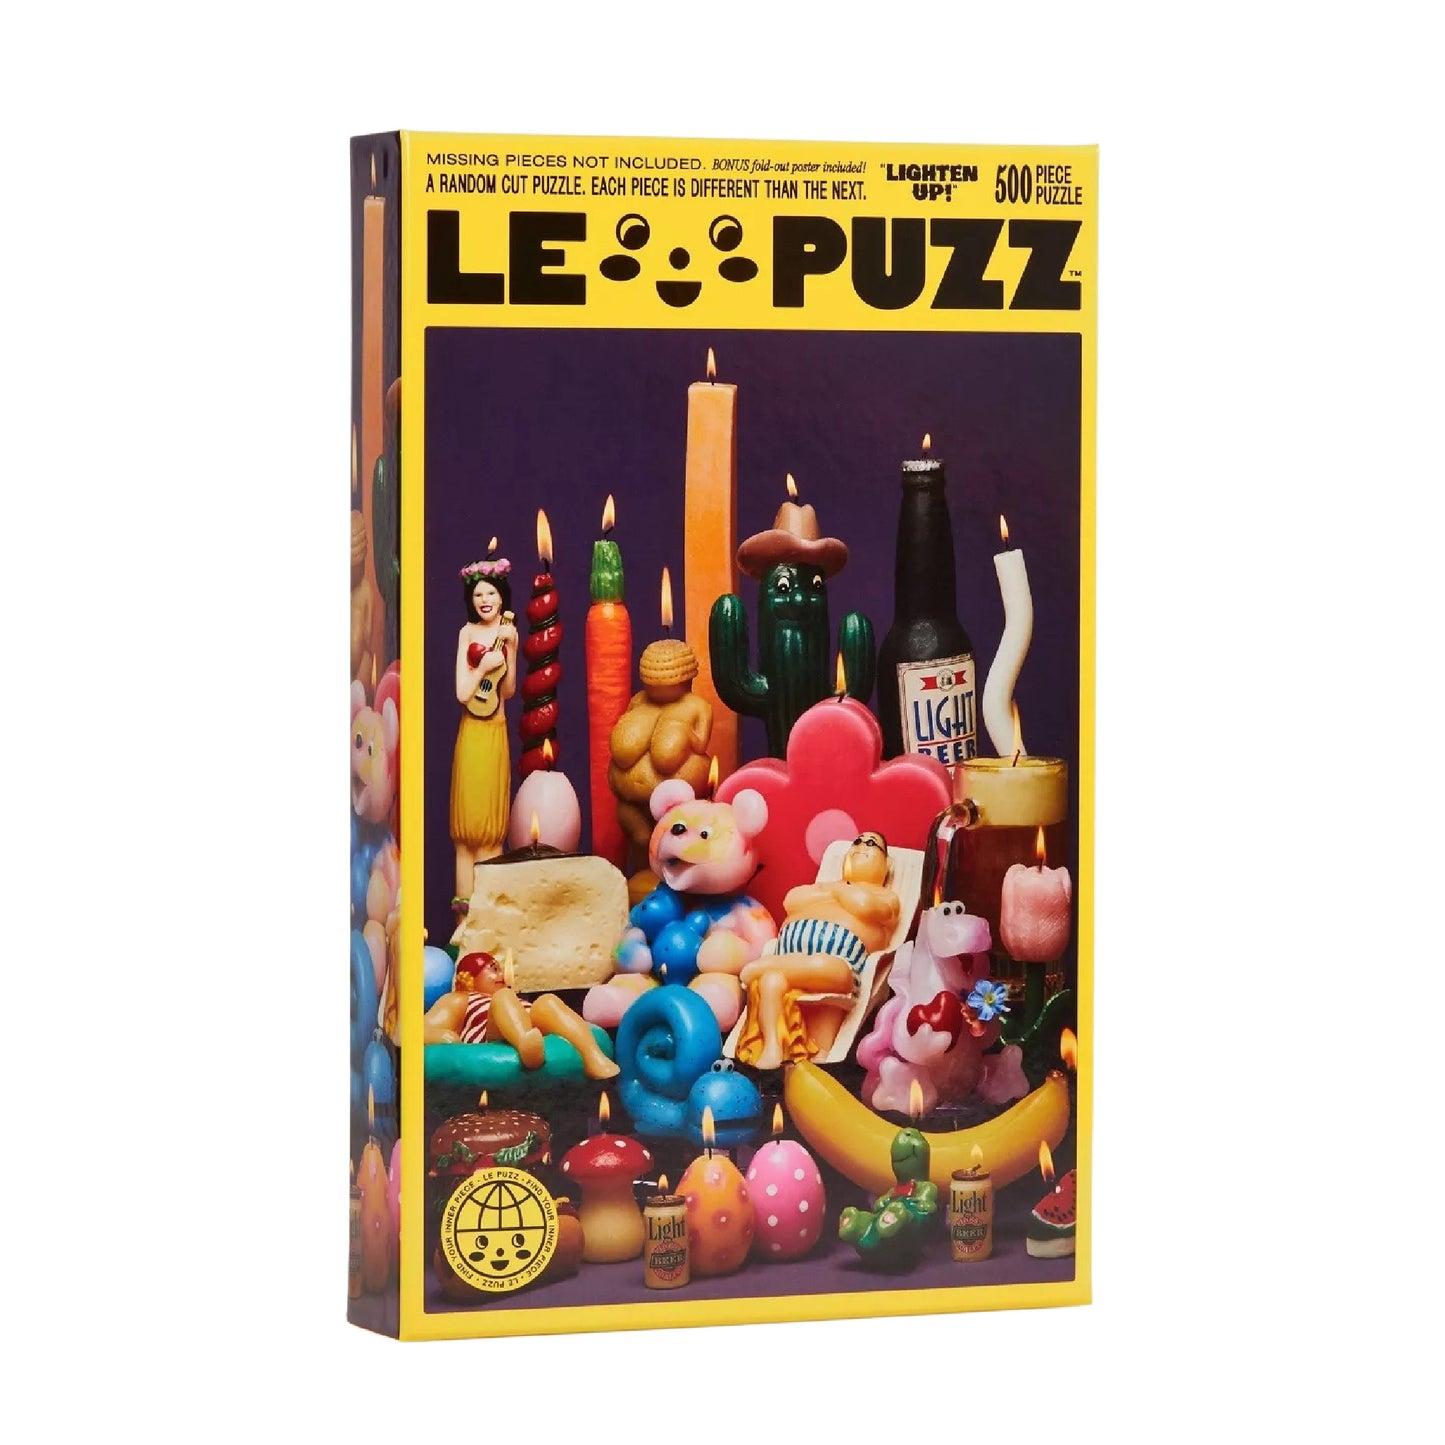 Lighten Up Puzzle x Le Puzz